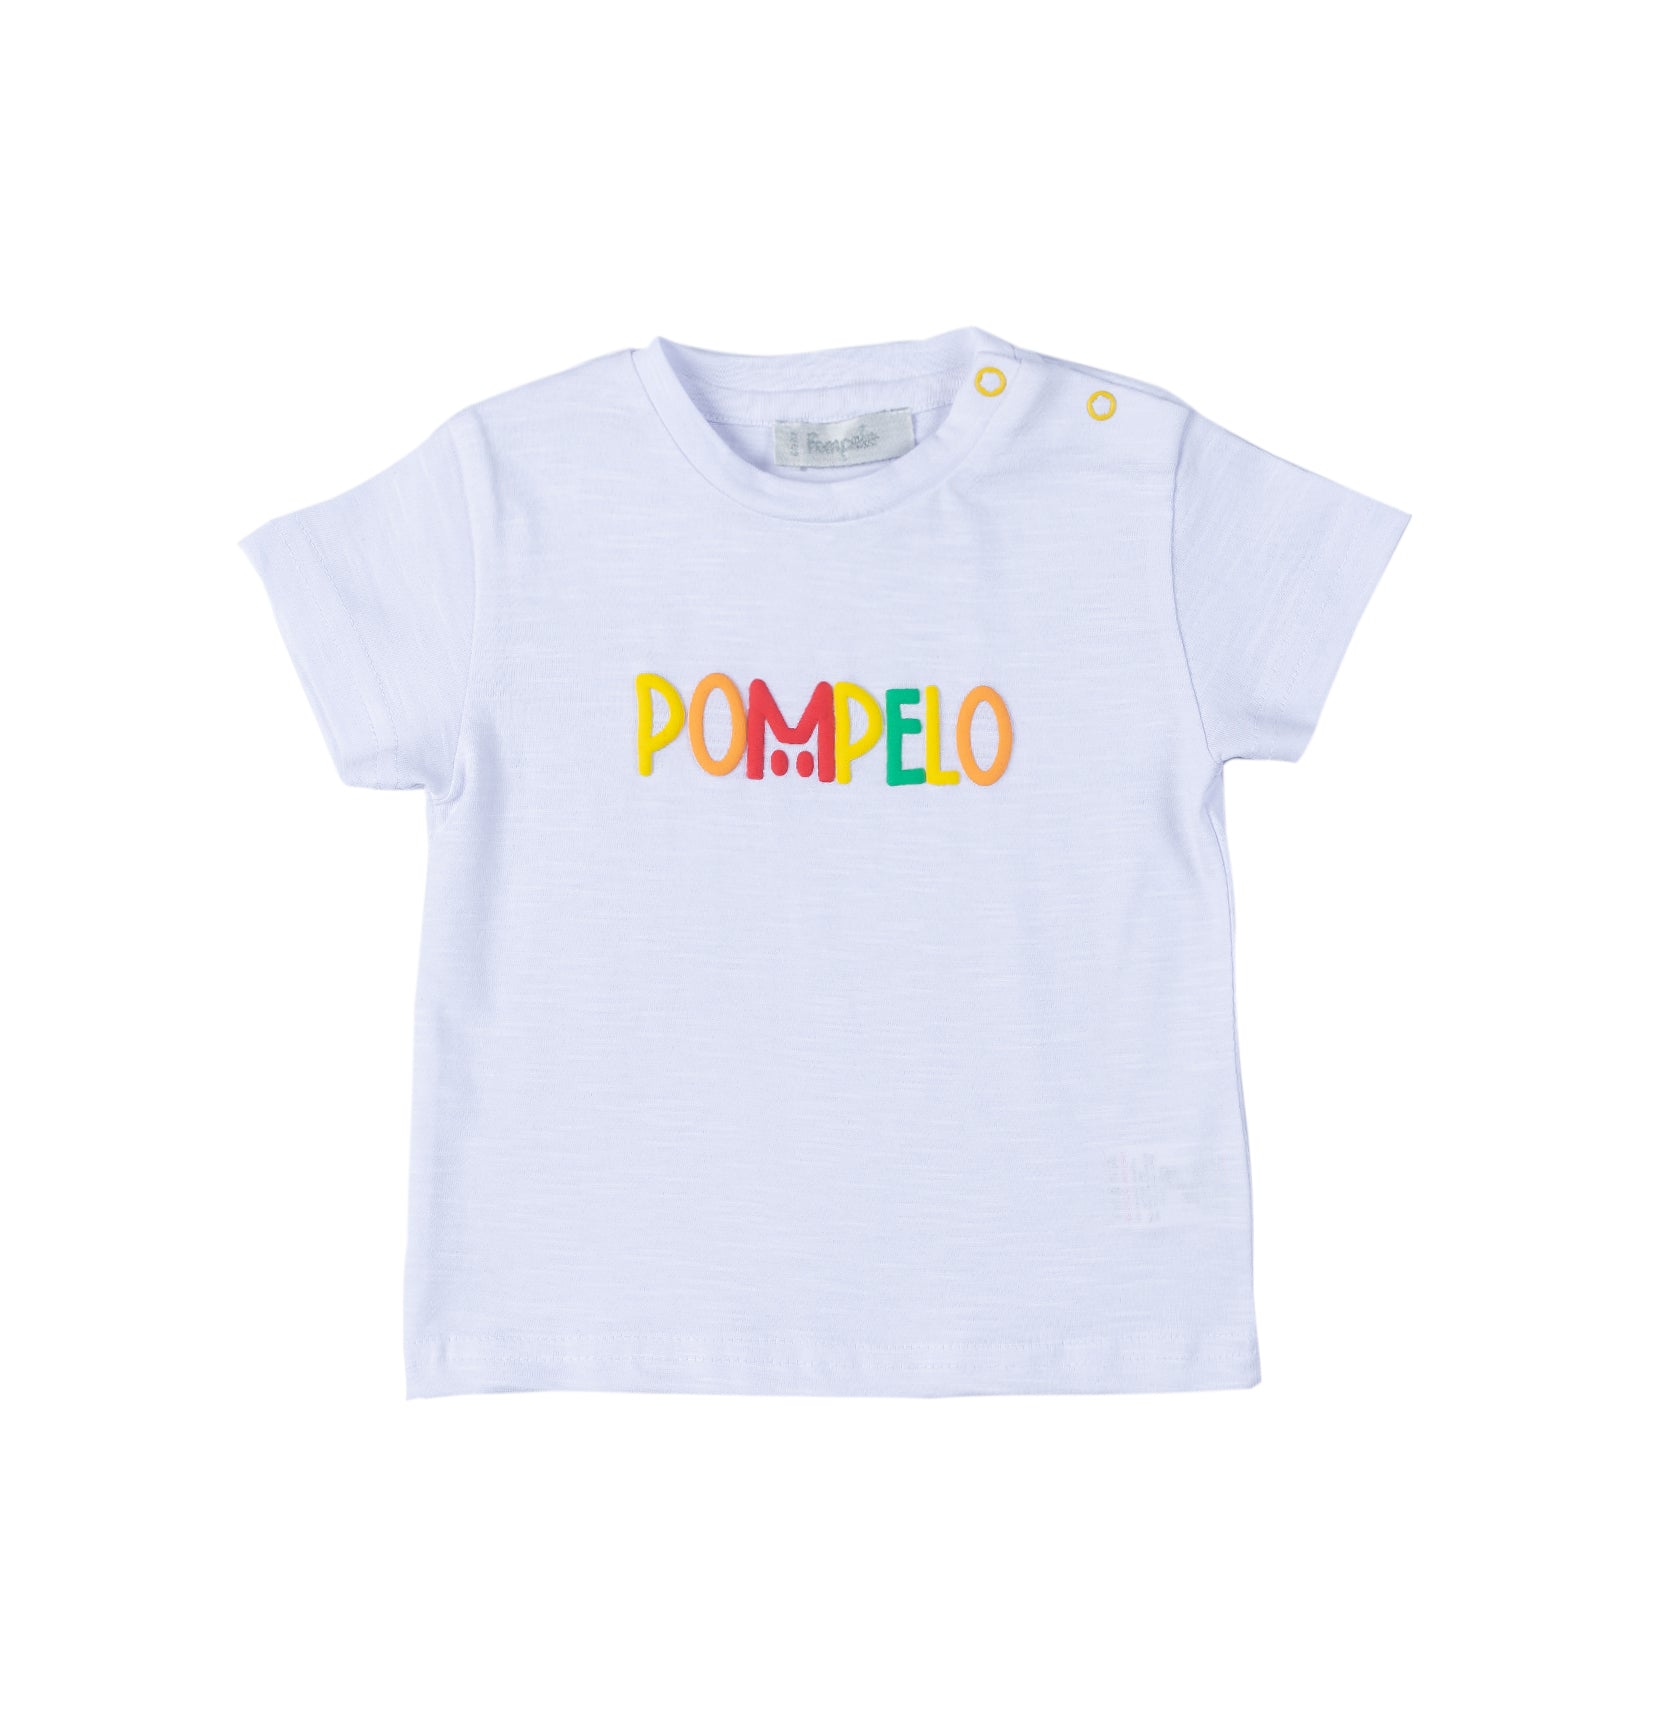 Boy unique shirt by Pompelo